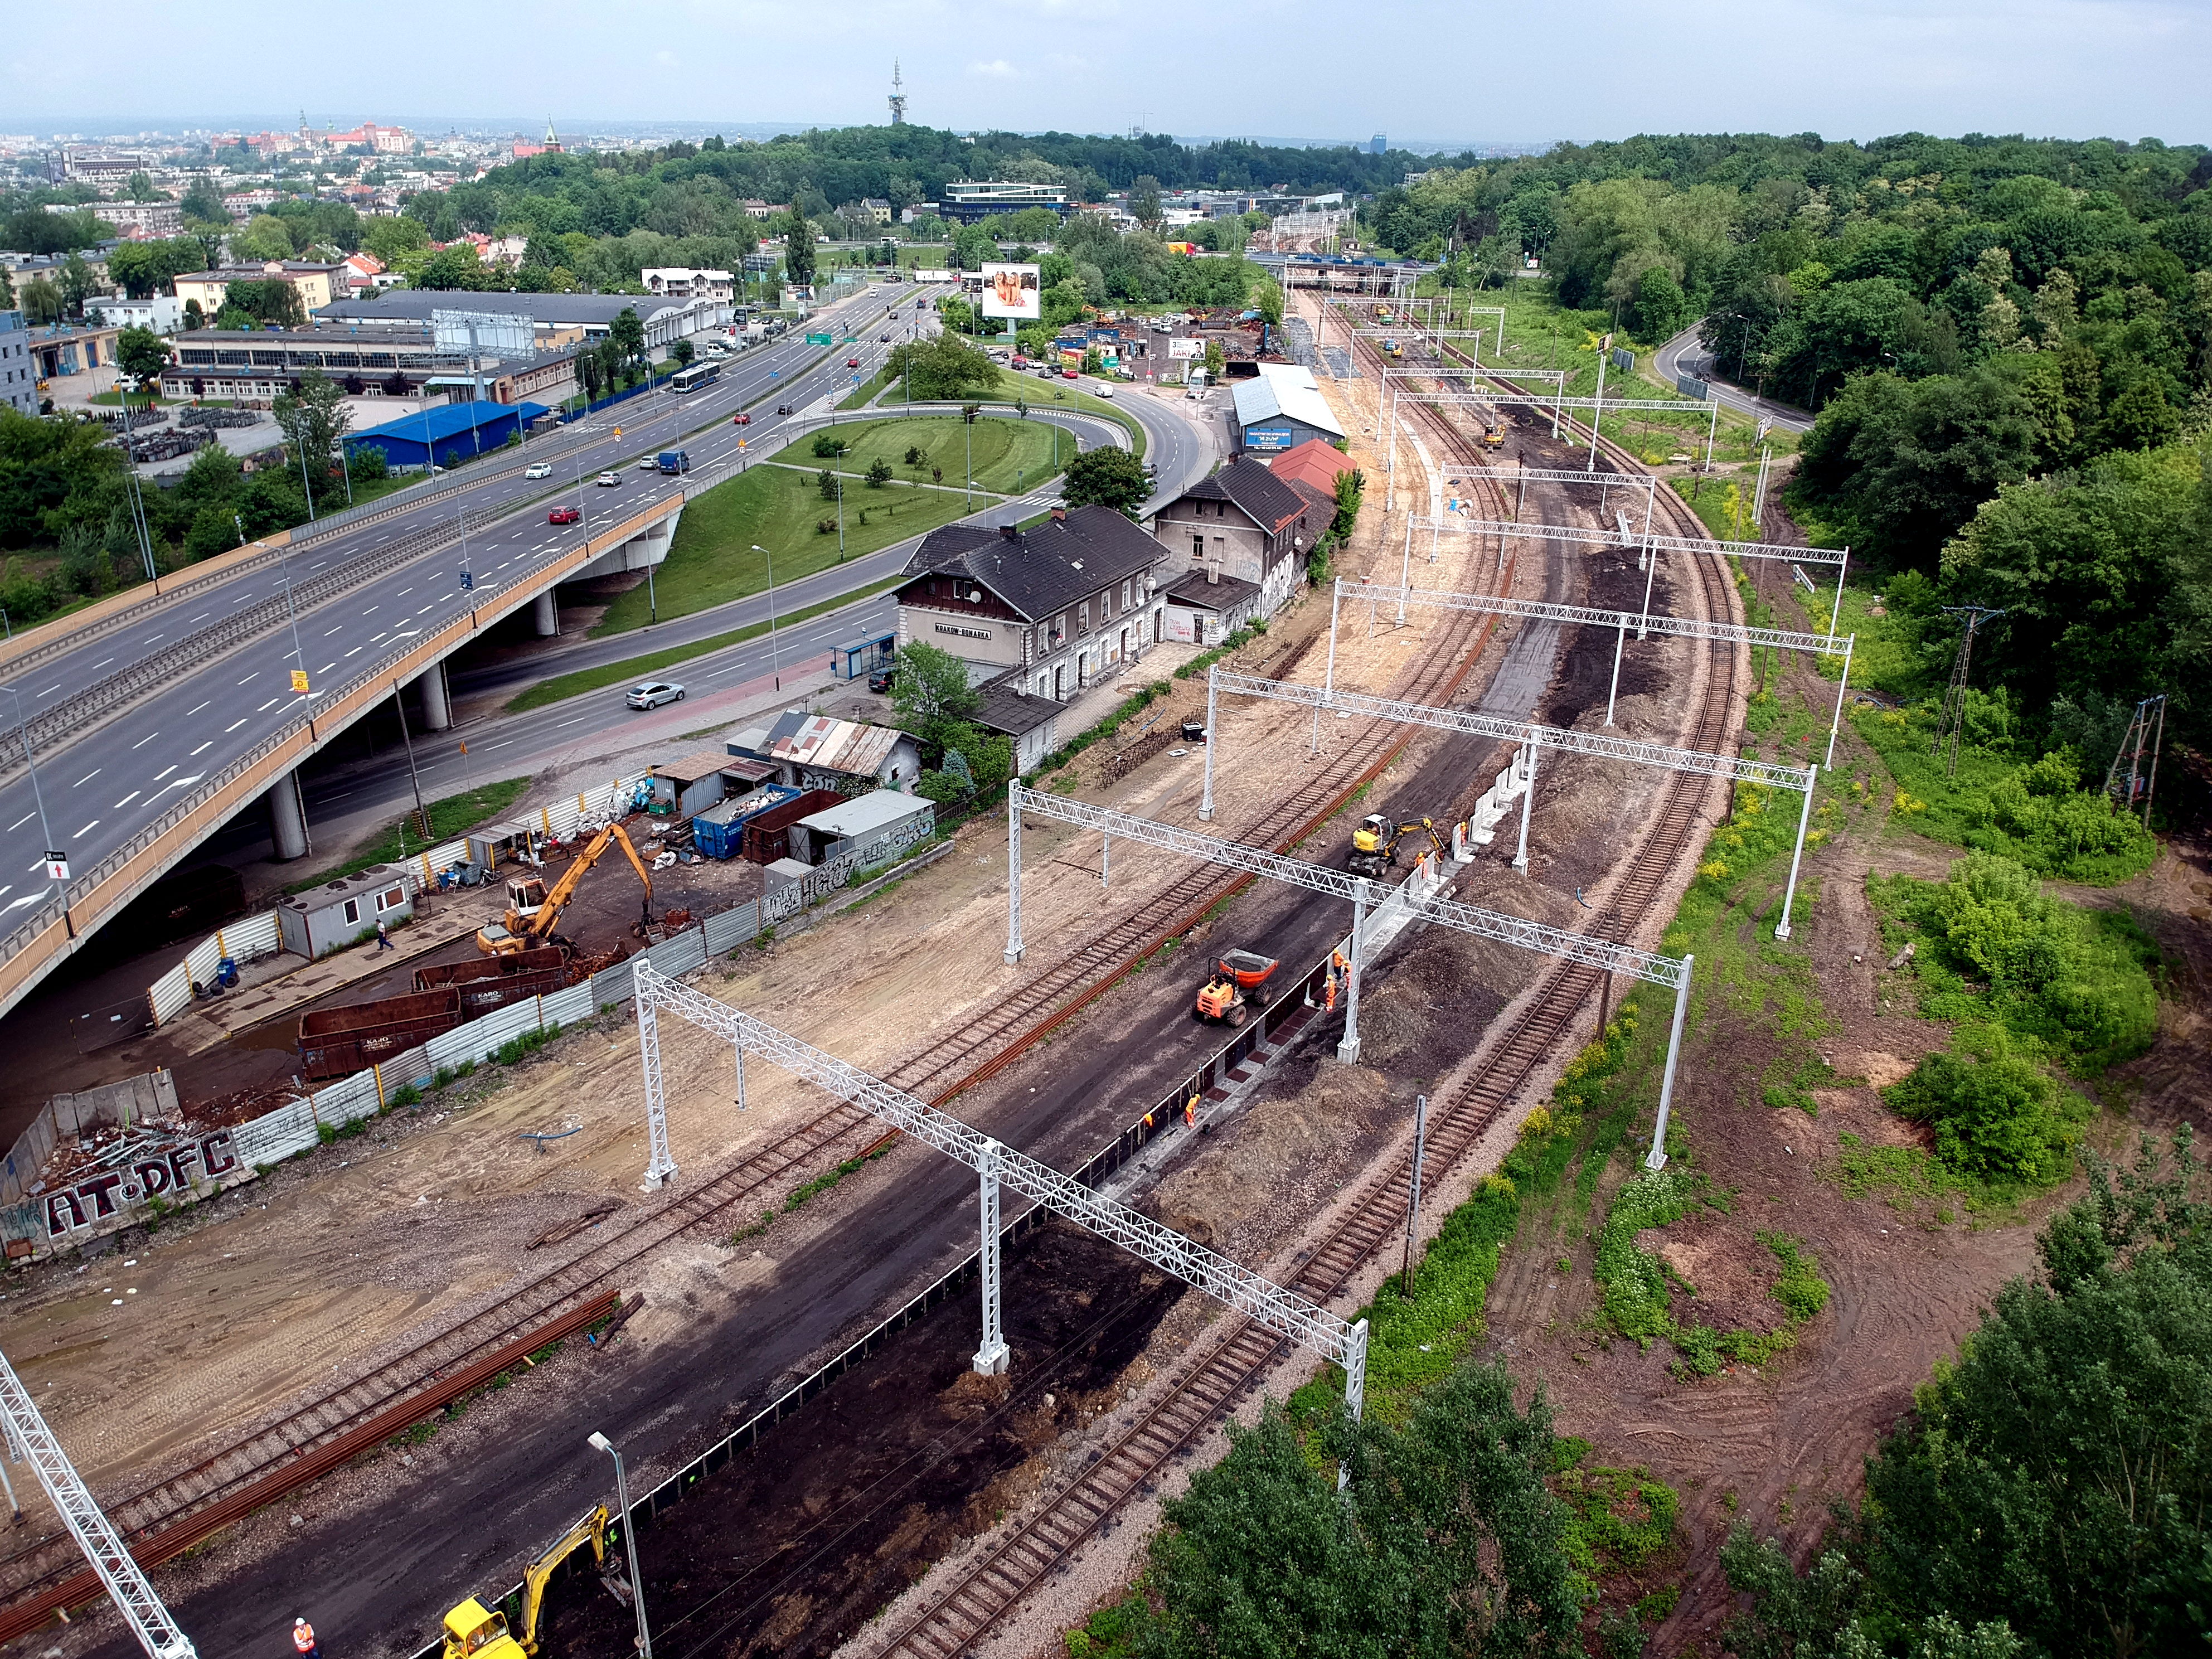 Prace budowlane na torze kolejowym, Kraków  - Edilizia ferroviaria